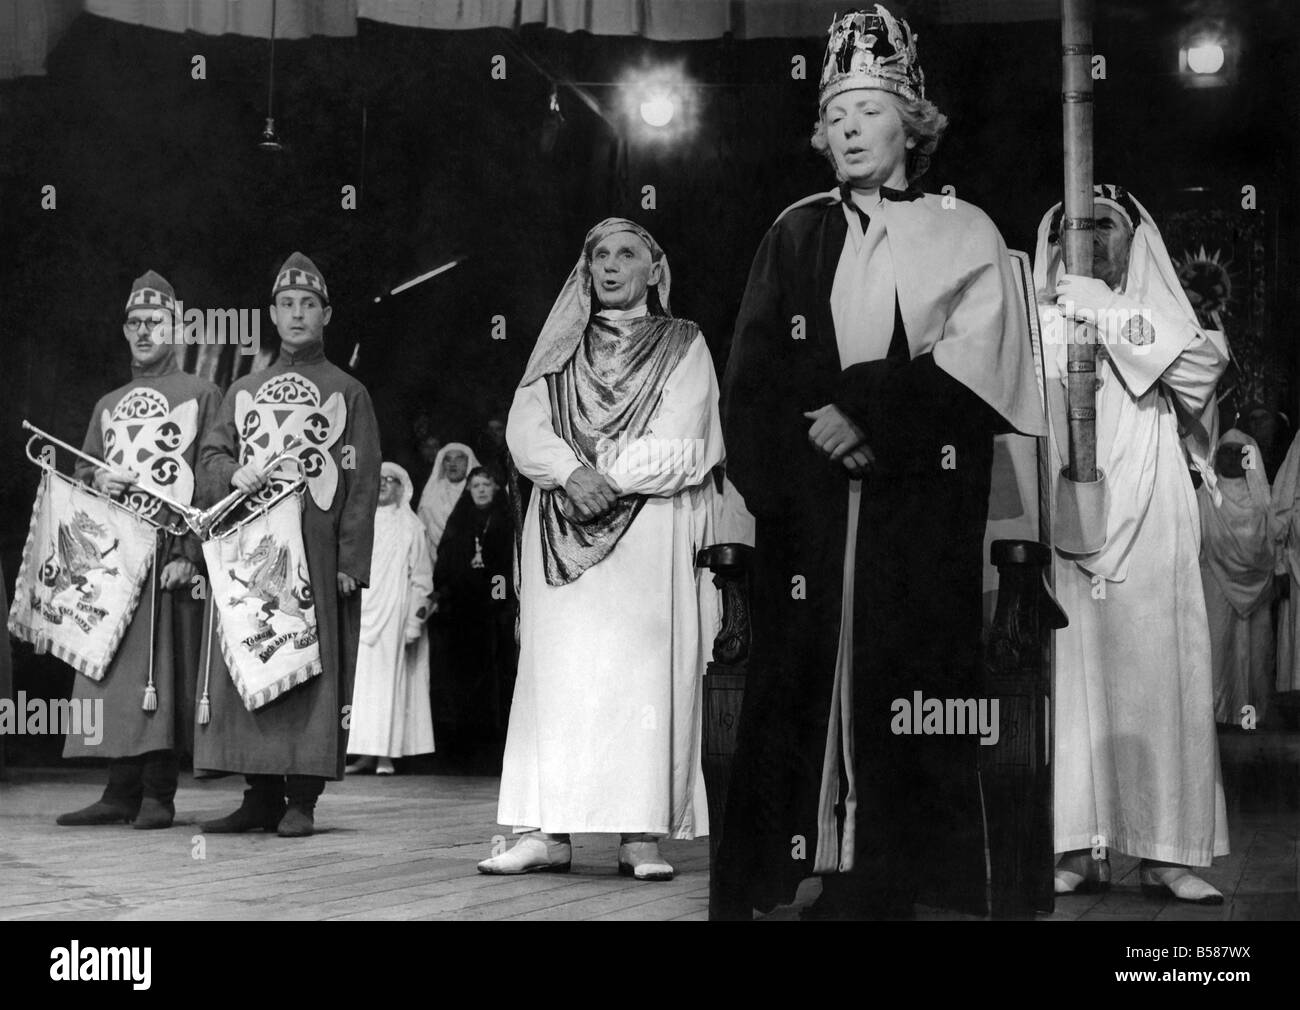 Dilys Cadwaladr, d Llanrhychwyn, Caernarvonshire, le barde couronné se joint à chanter l'hymne national gallois. 1953 Août Banque D'Images